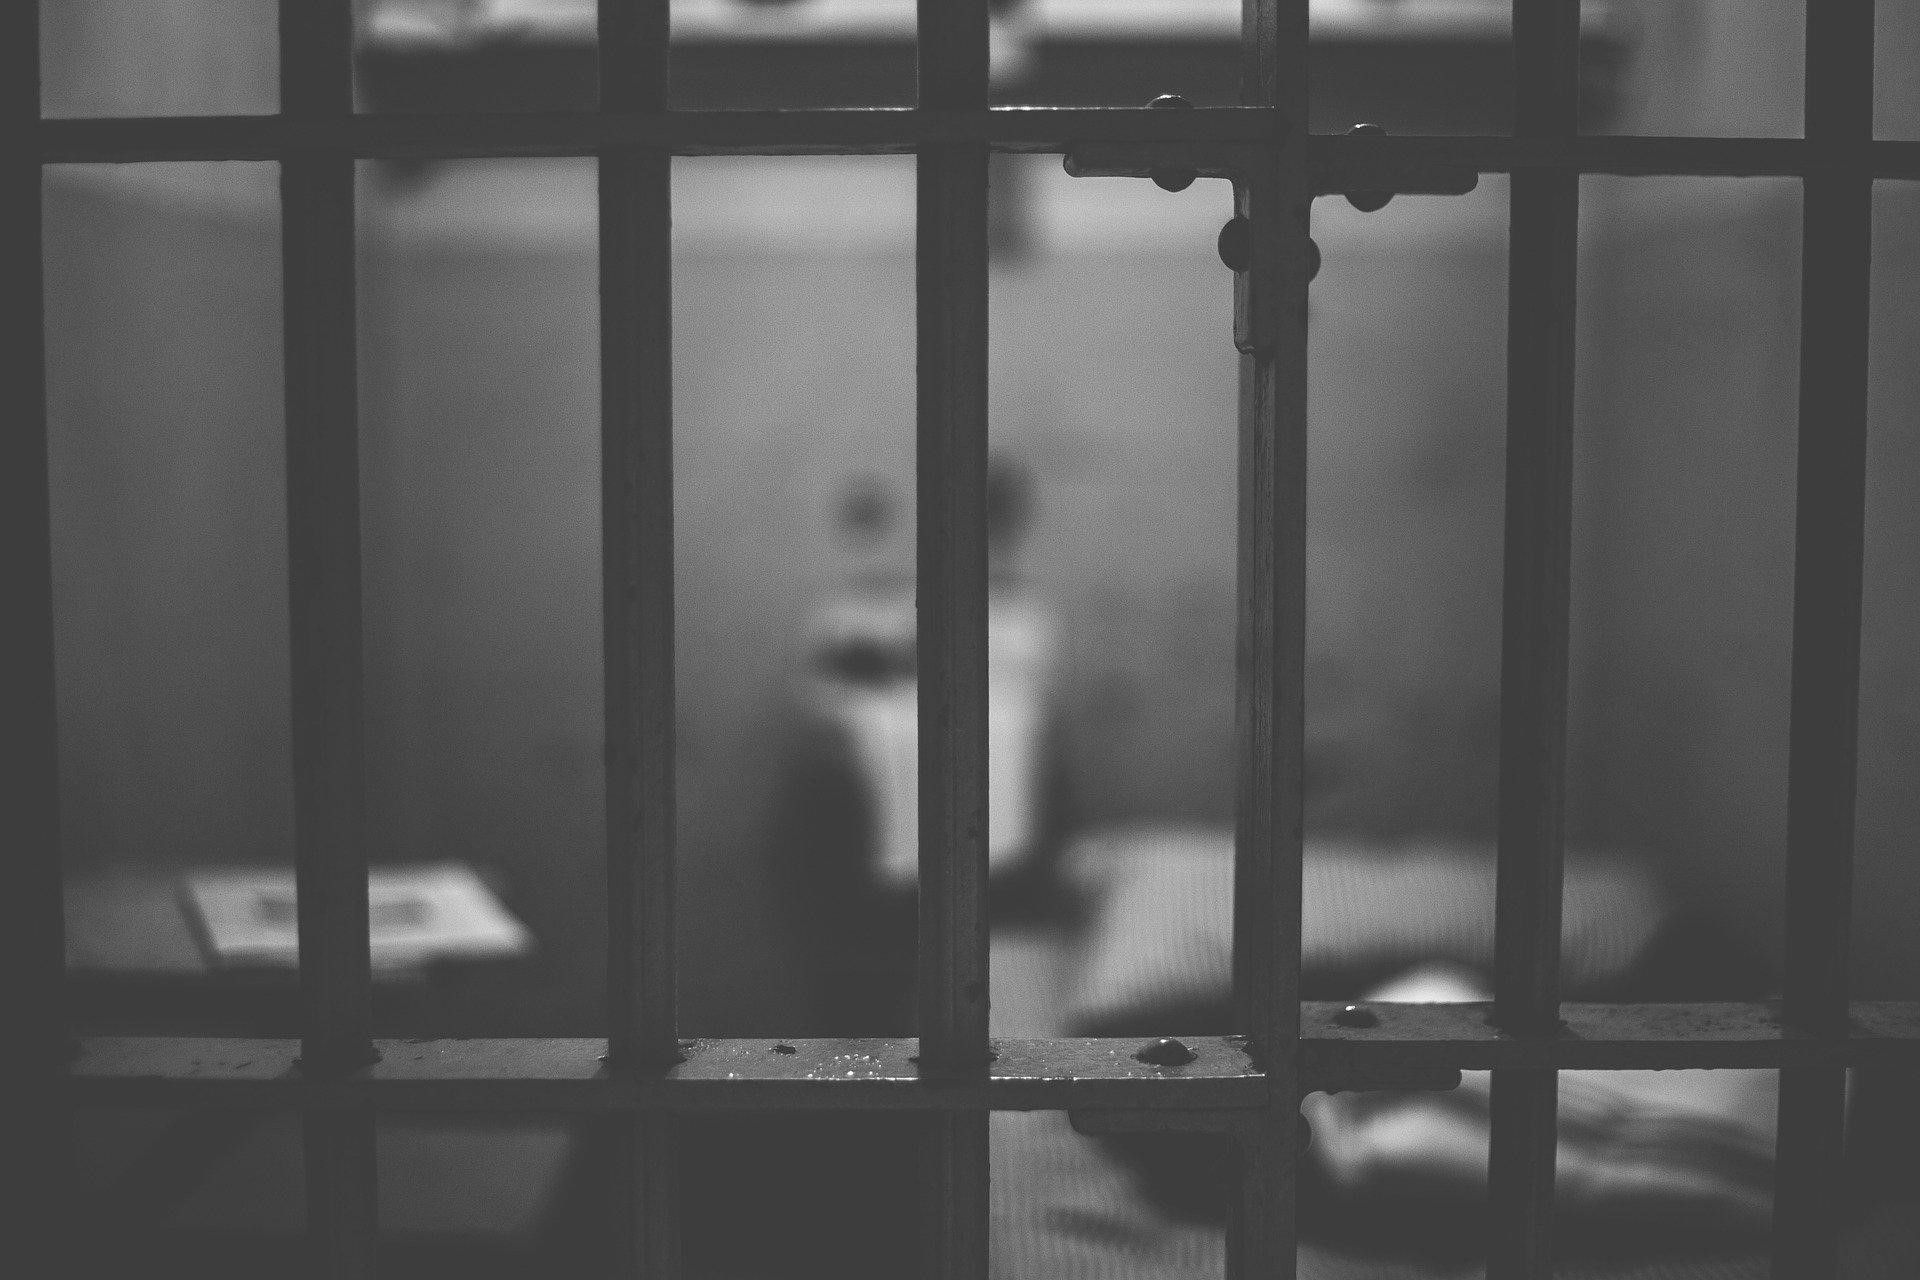 Detenuti dei detenuti: quando i discorsi diventano identità. Una ricerca esplorativa sullo stigma dei detenuti “sex offender”